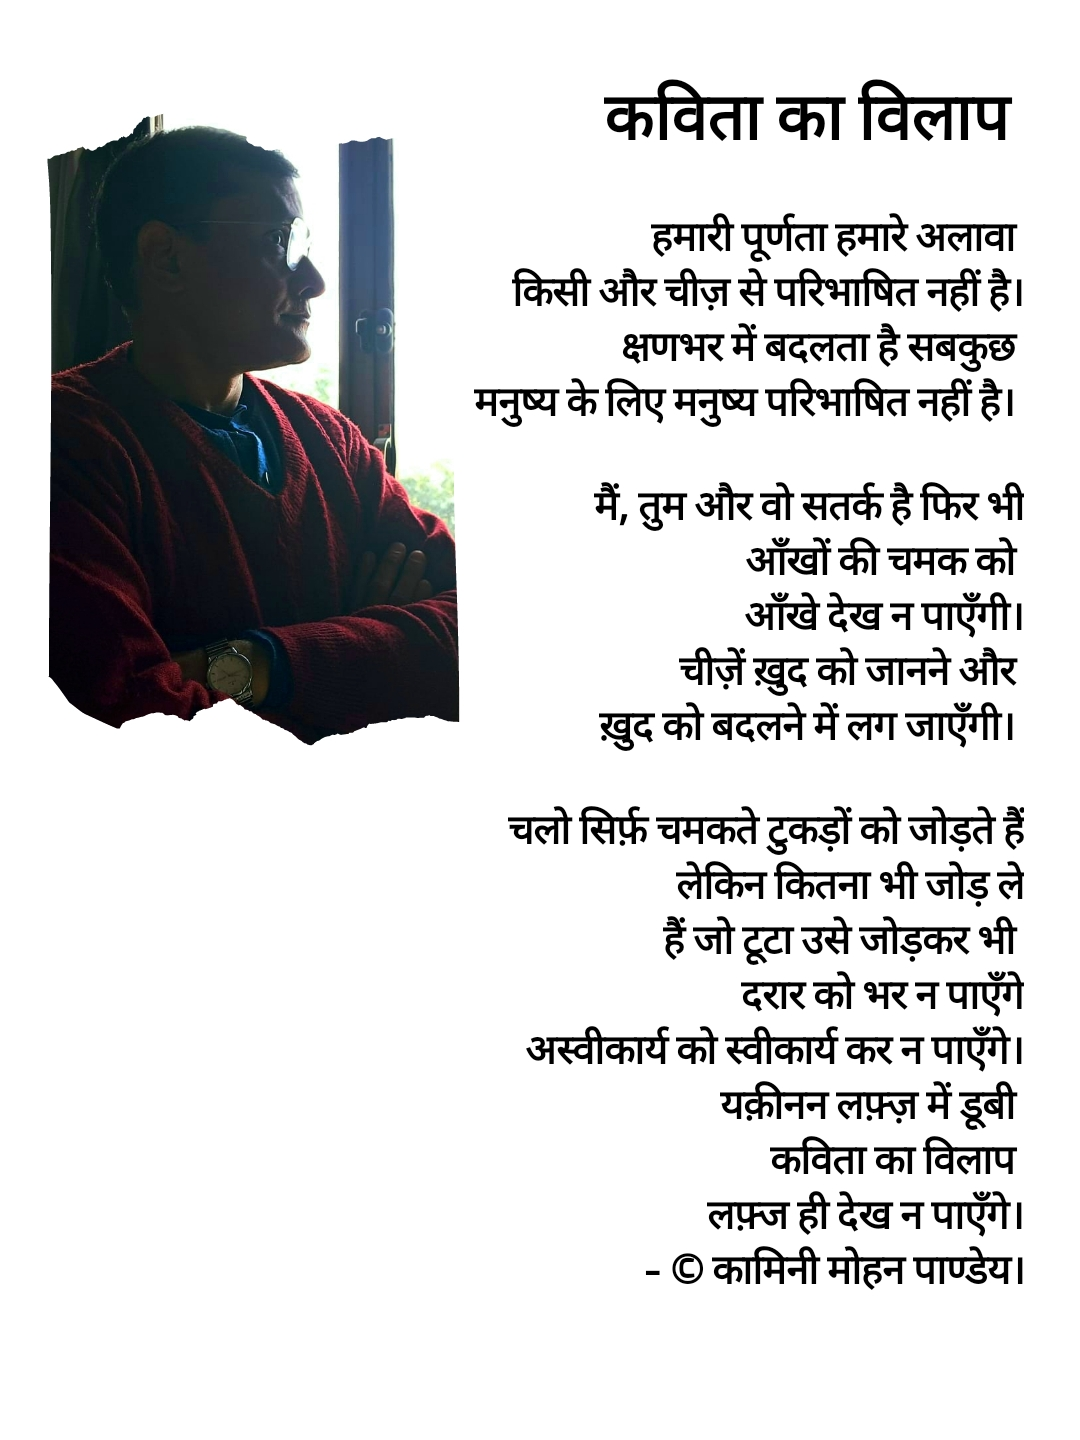 217.कविता का विलाप
- © कामिनी मोहन।'s image